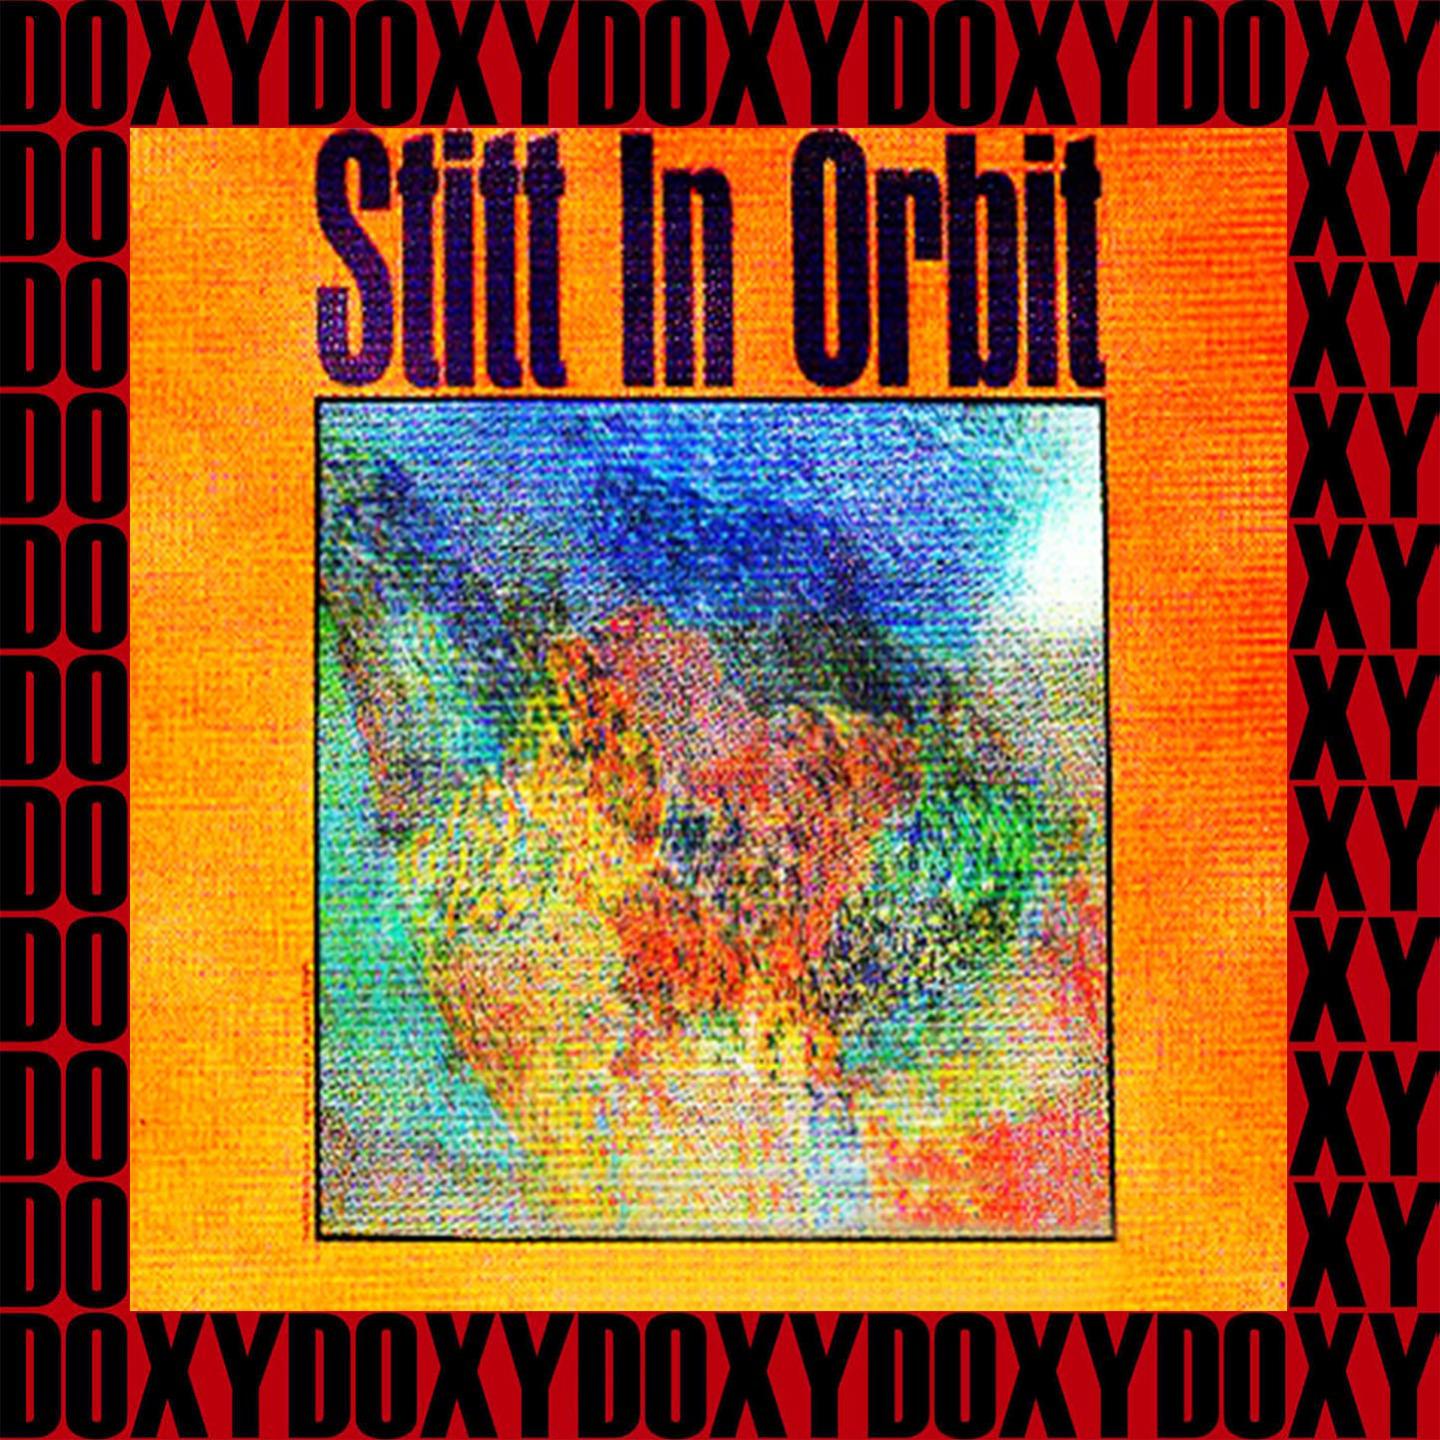 Stitt In Orbit (Remastered Version) (Doxy Collection)